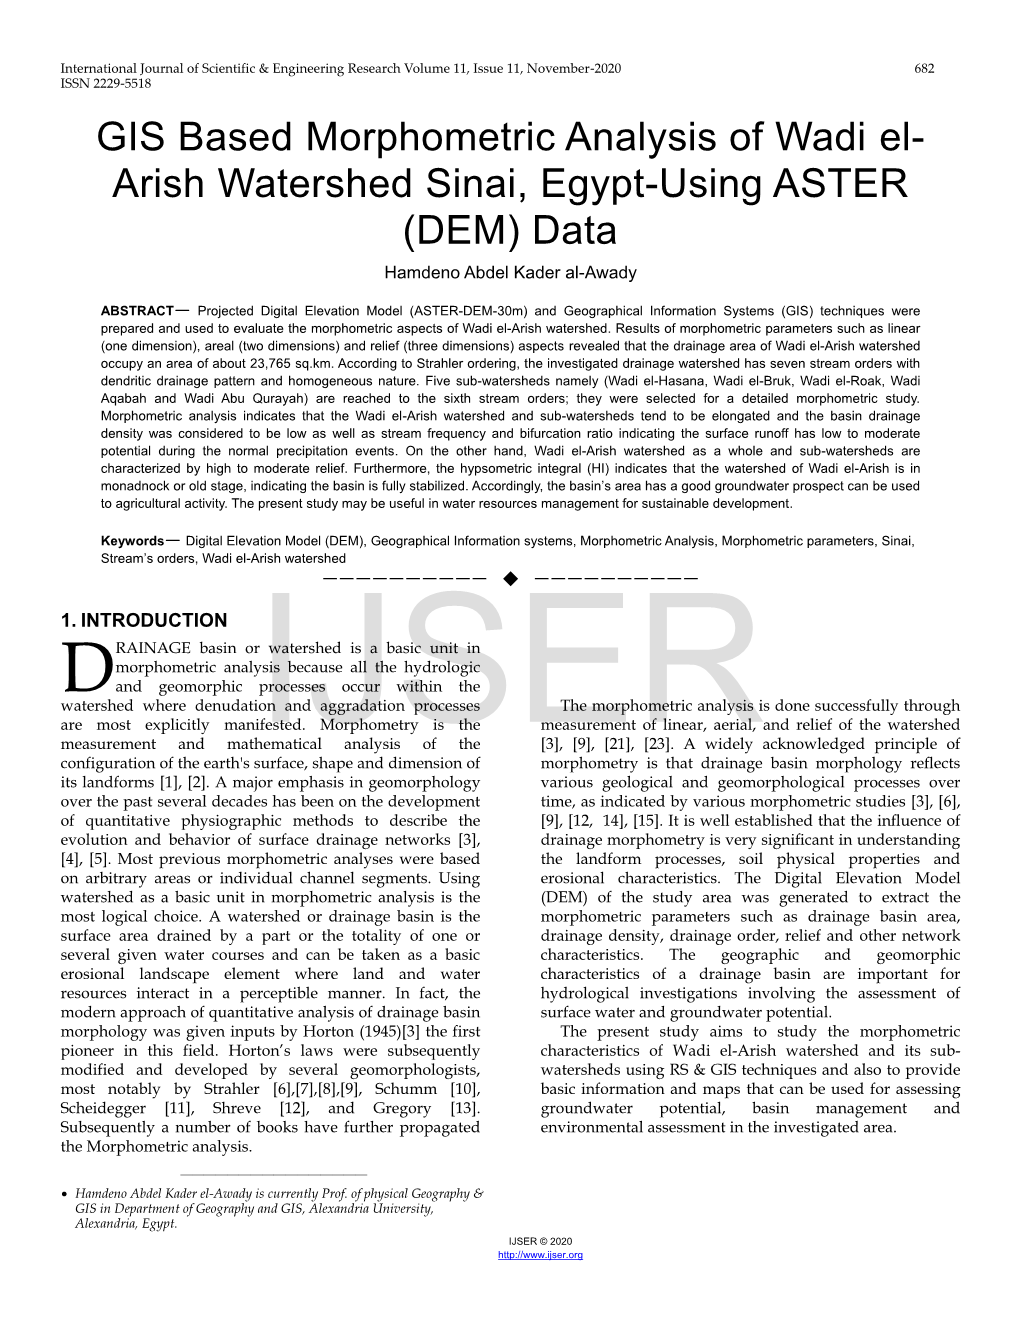 GIS Based Morphometric Analysis of Wadi El-Arish Watershed Sinai, Egypt-Using ASTER (DEM) Data